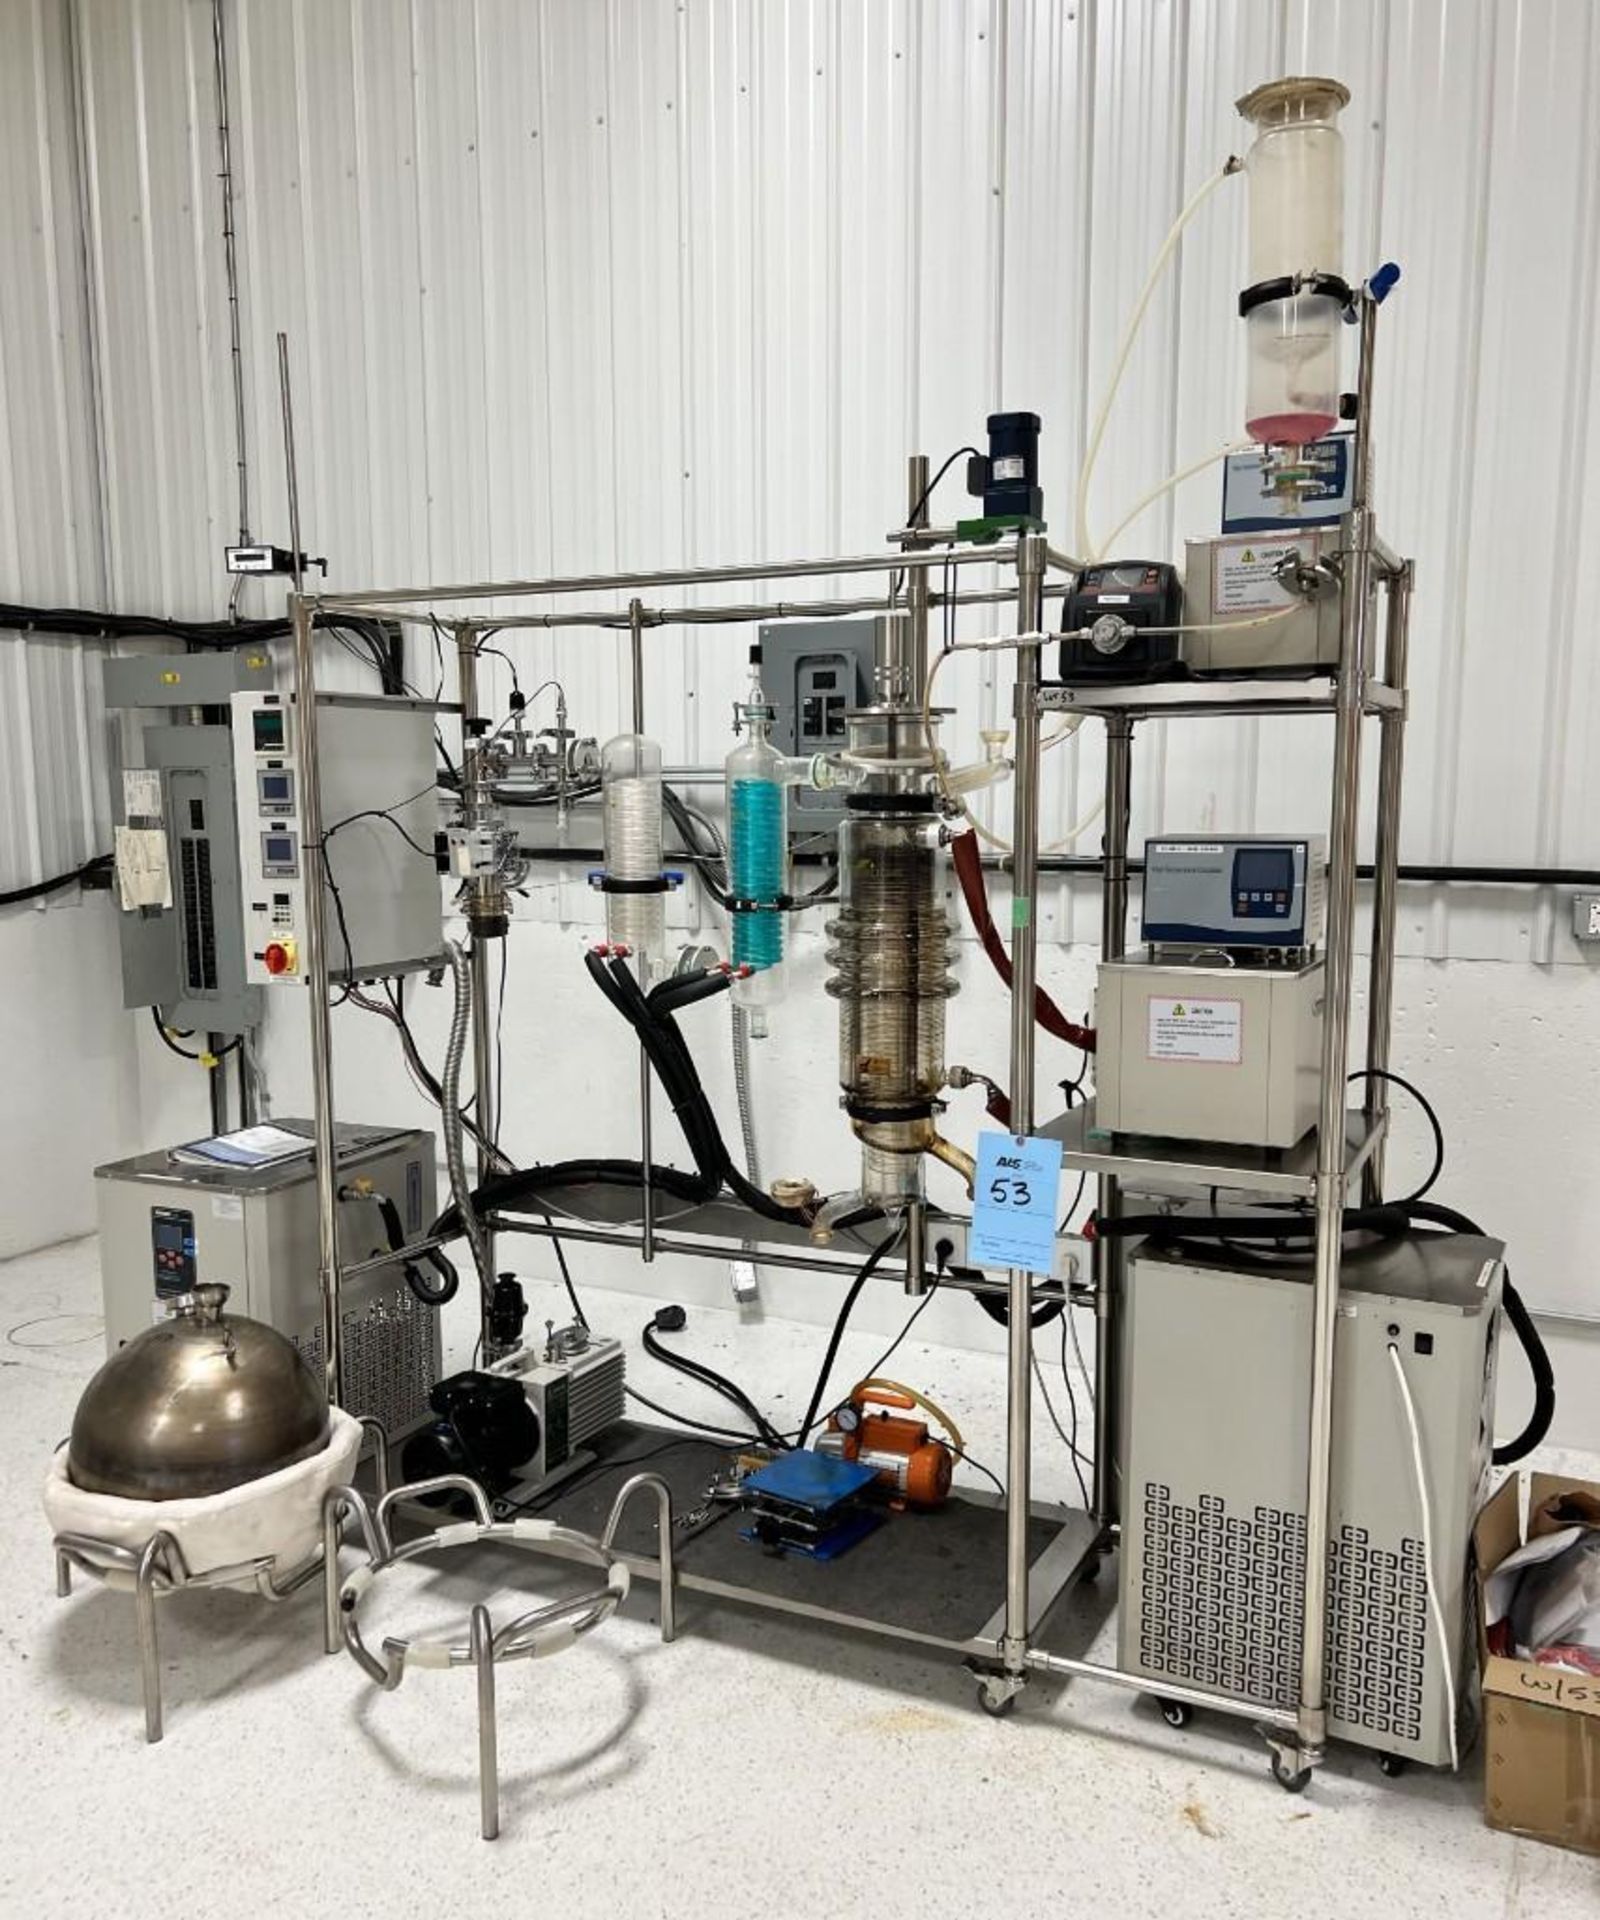 YHCHEM Wiped Film Molecular Distillation System, Model YMD-150, Built 05/2019. With misc. glass, vac